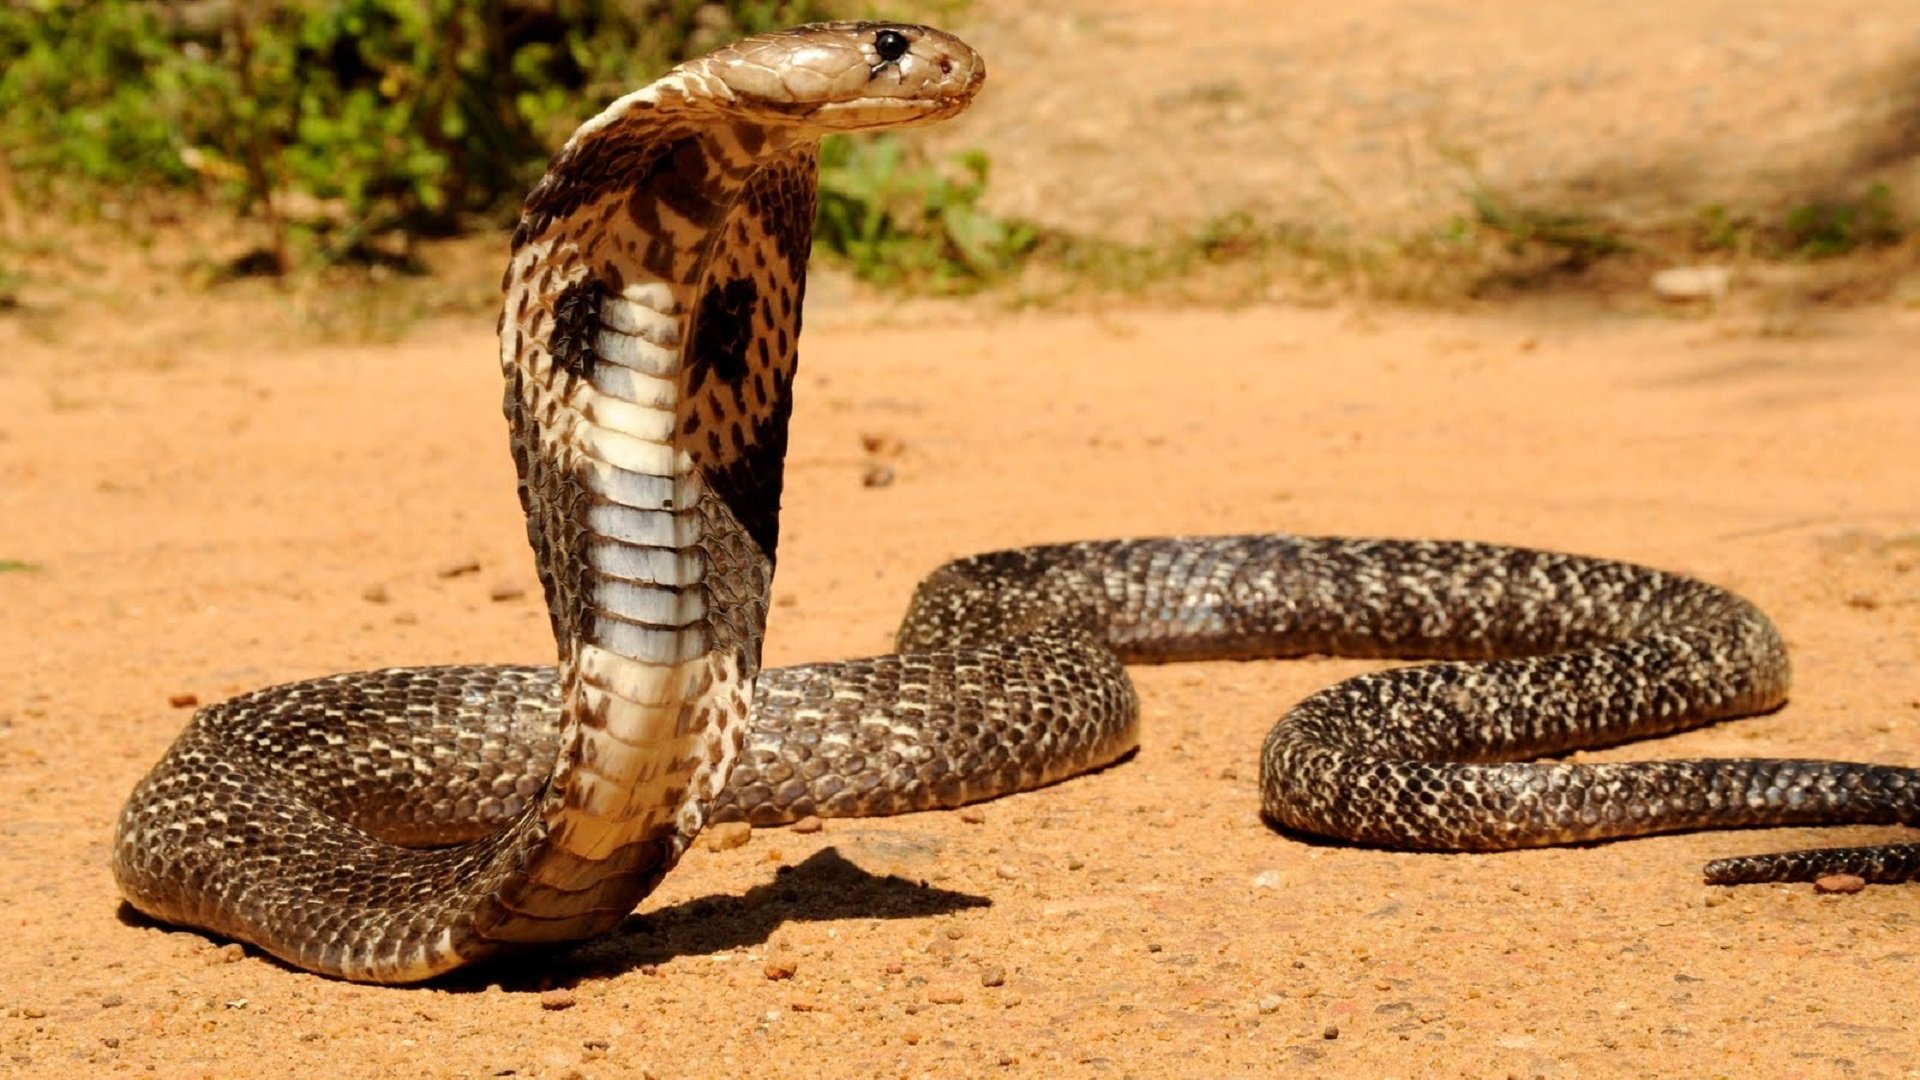 ular king cobra